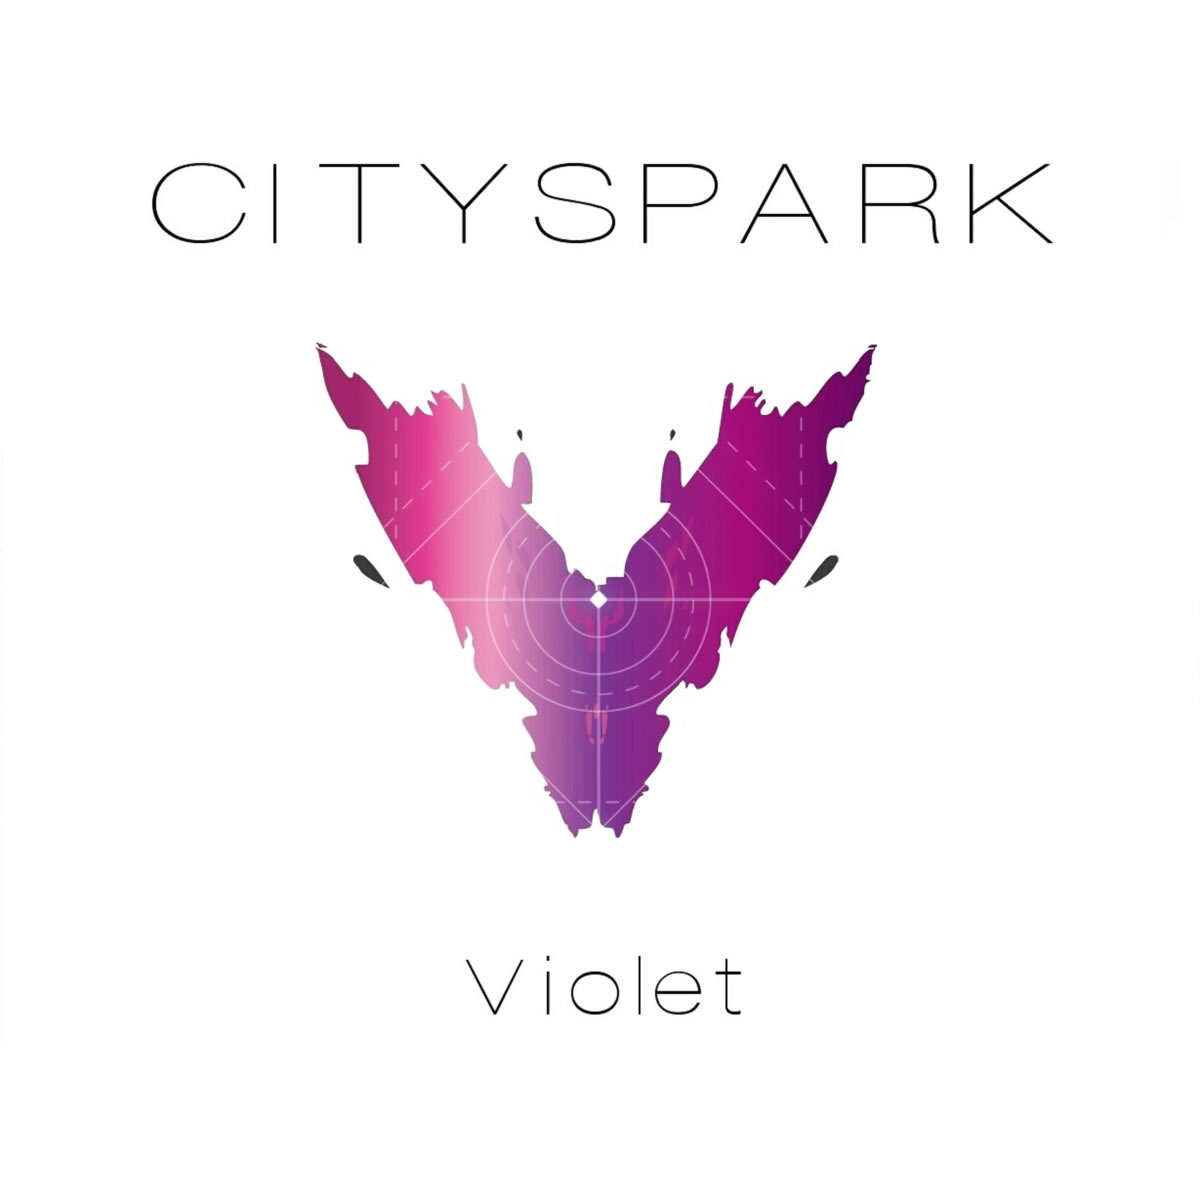 Cityspark e a feliz pop de “Violet”